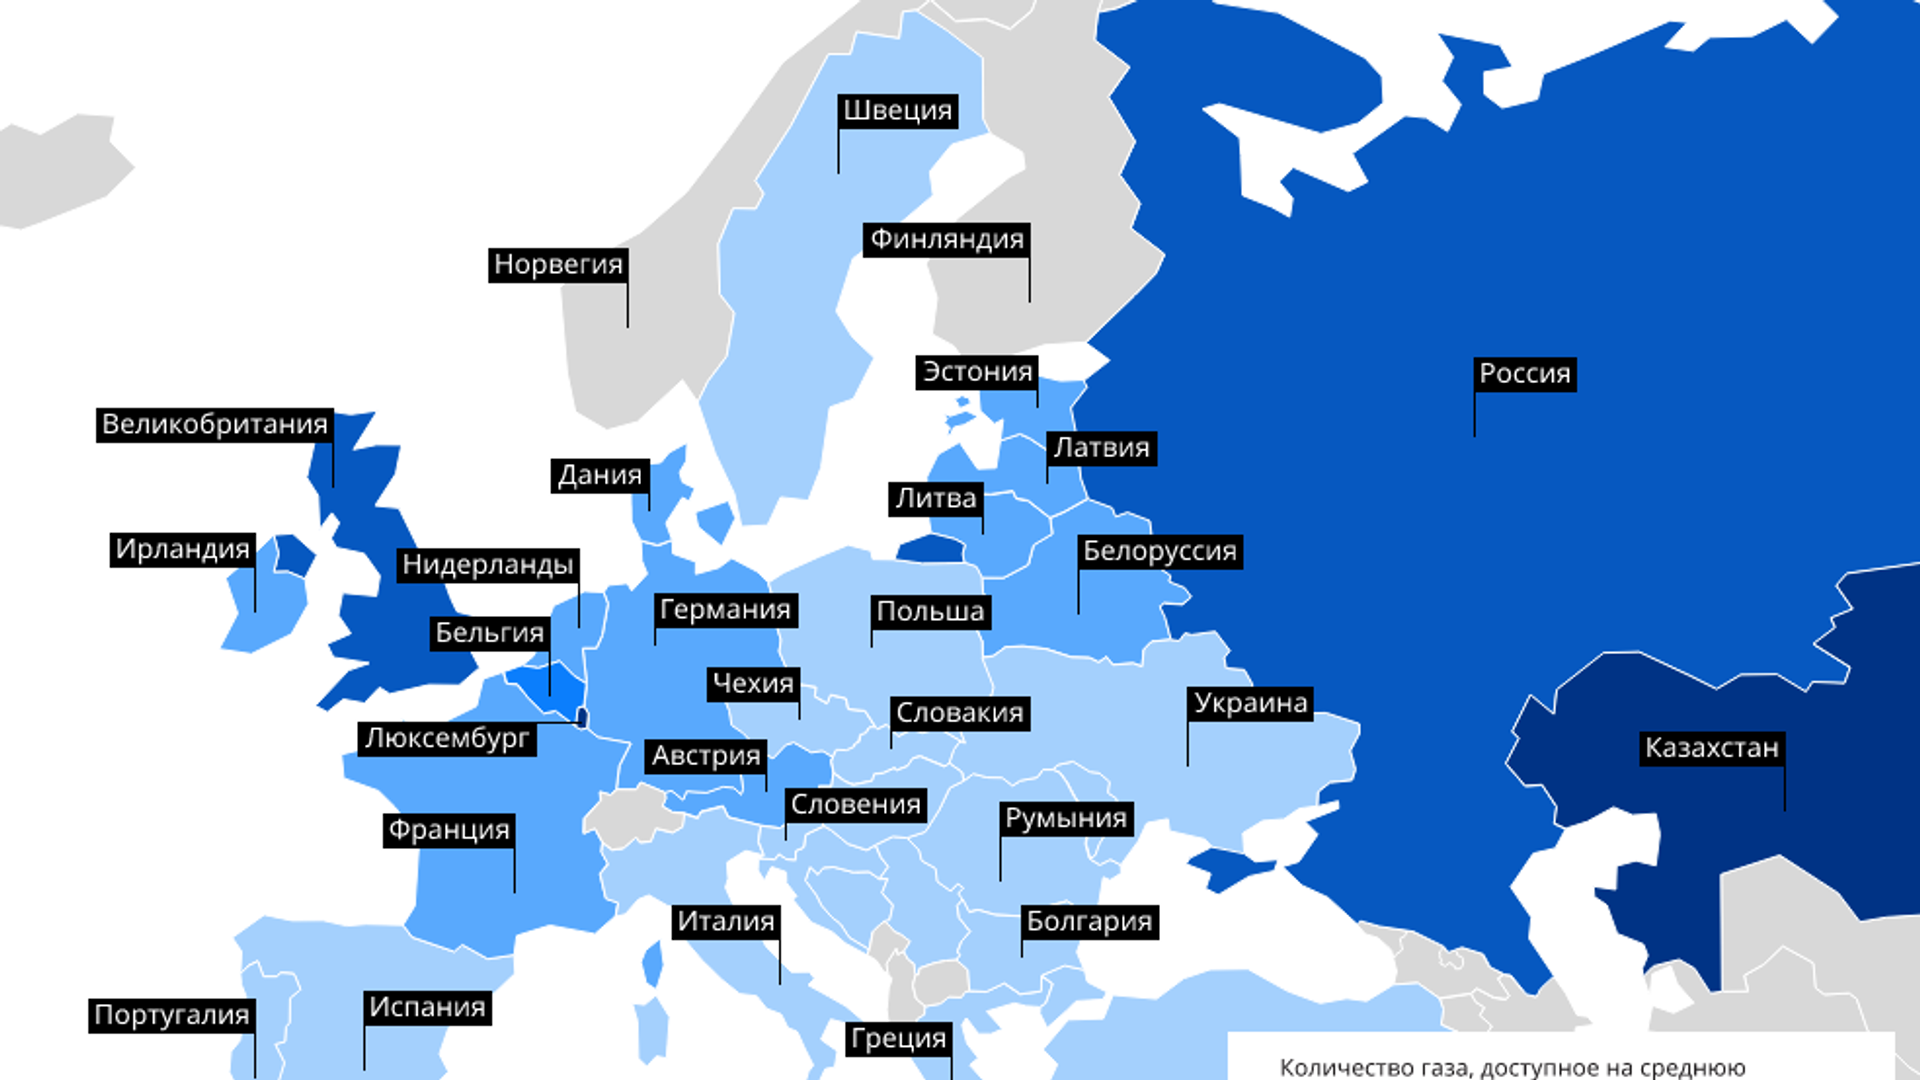 Низкие цены на газ в европе. ГАЗ В Европе. Природный ГАЗ В Европе. ГАЗ для населения в Европе. Бюджеты стран Европы.